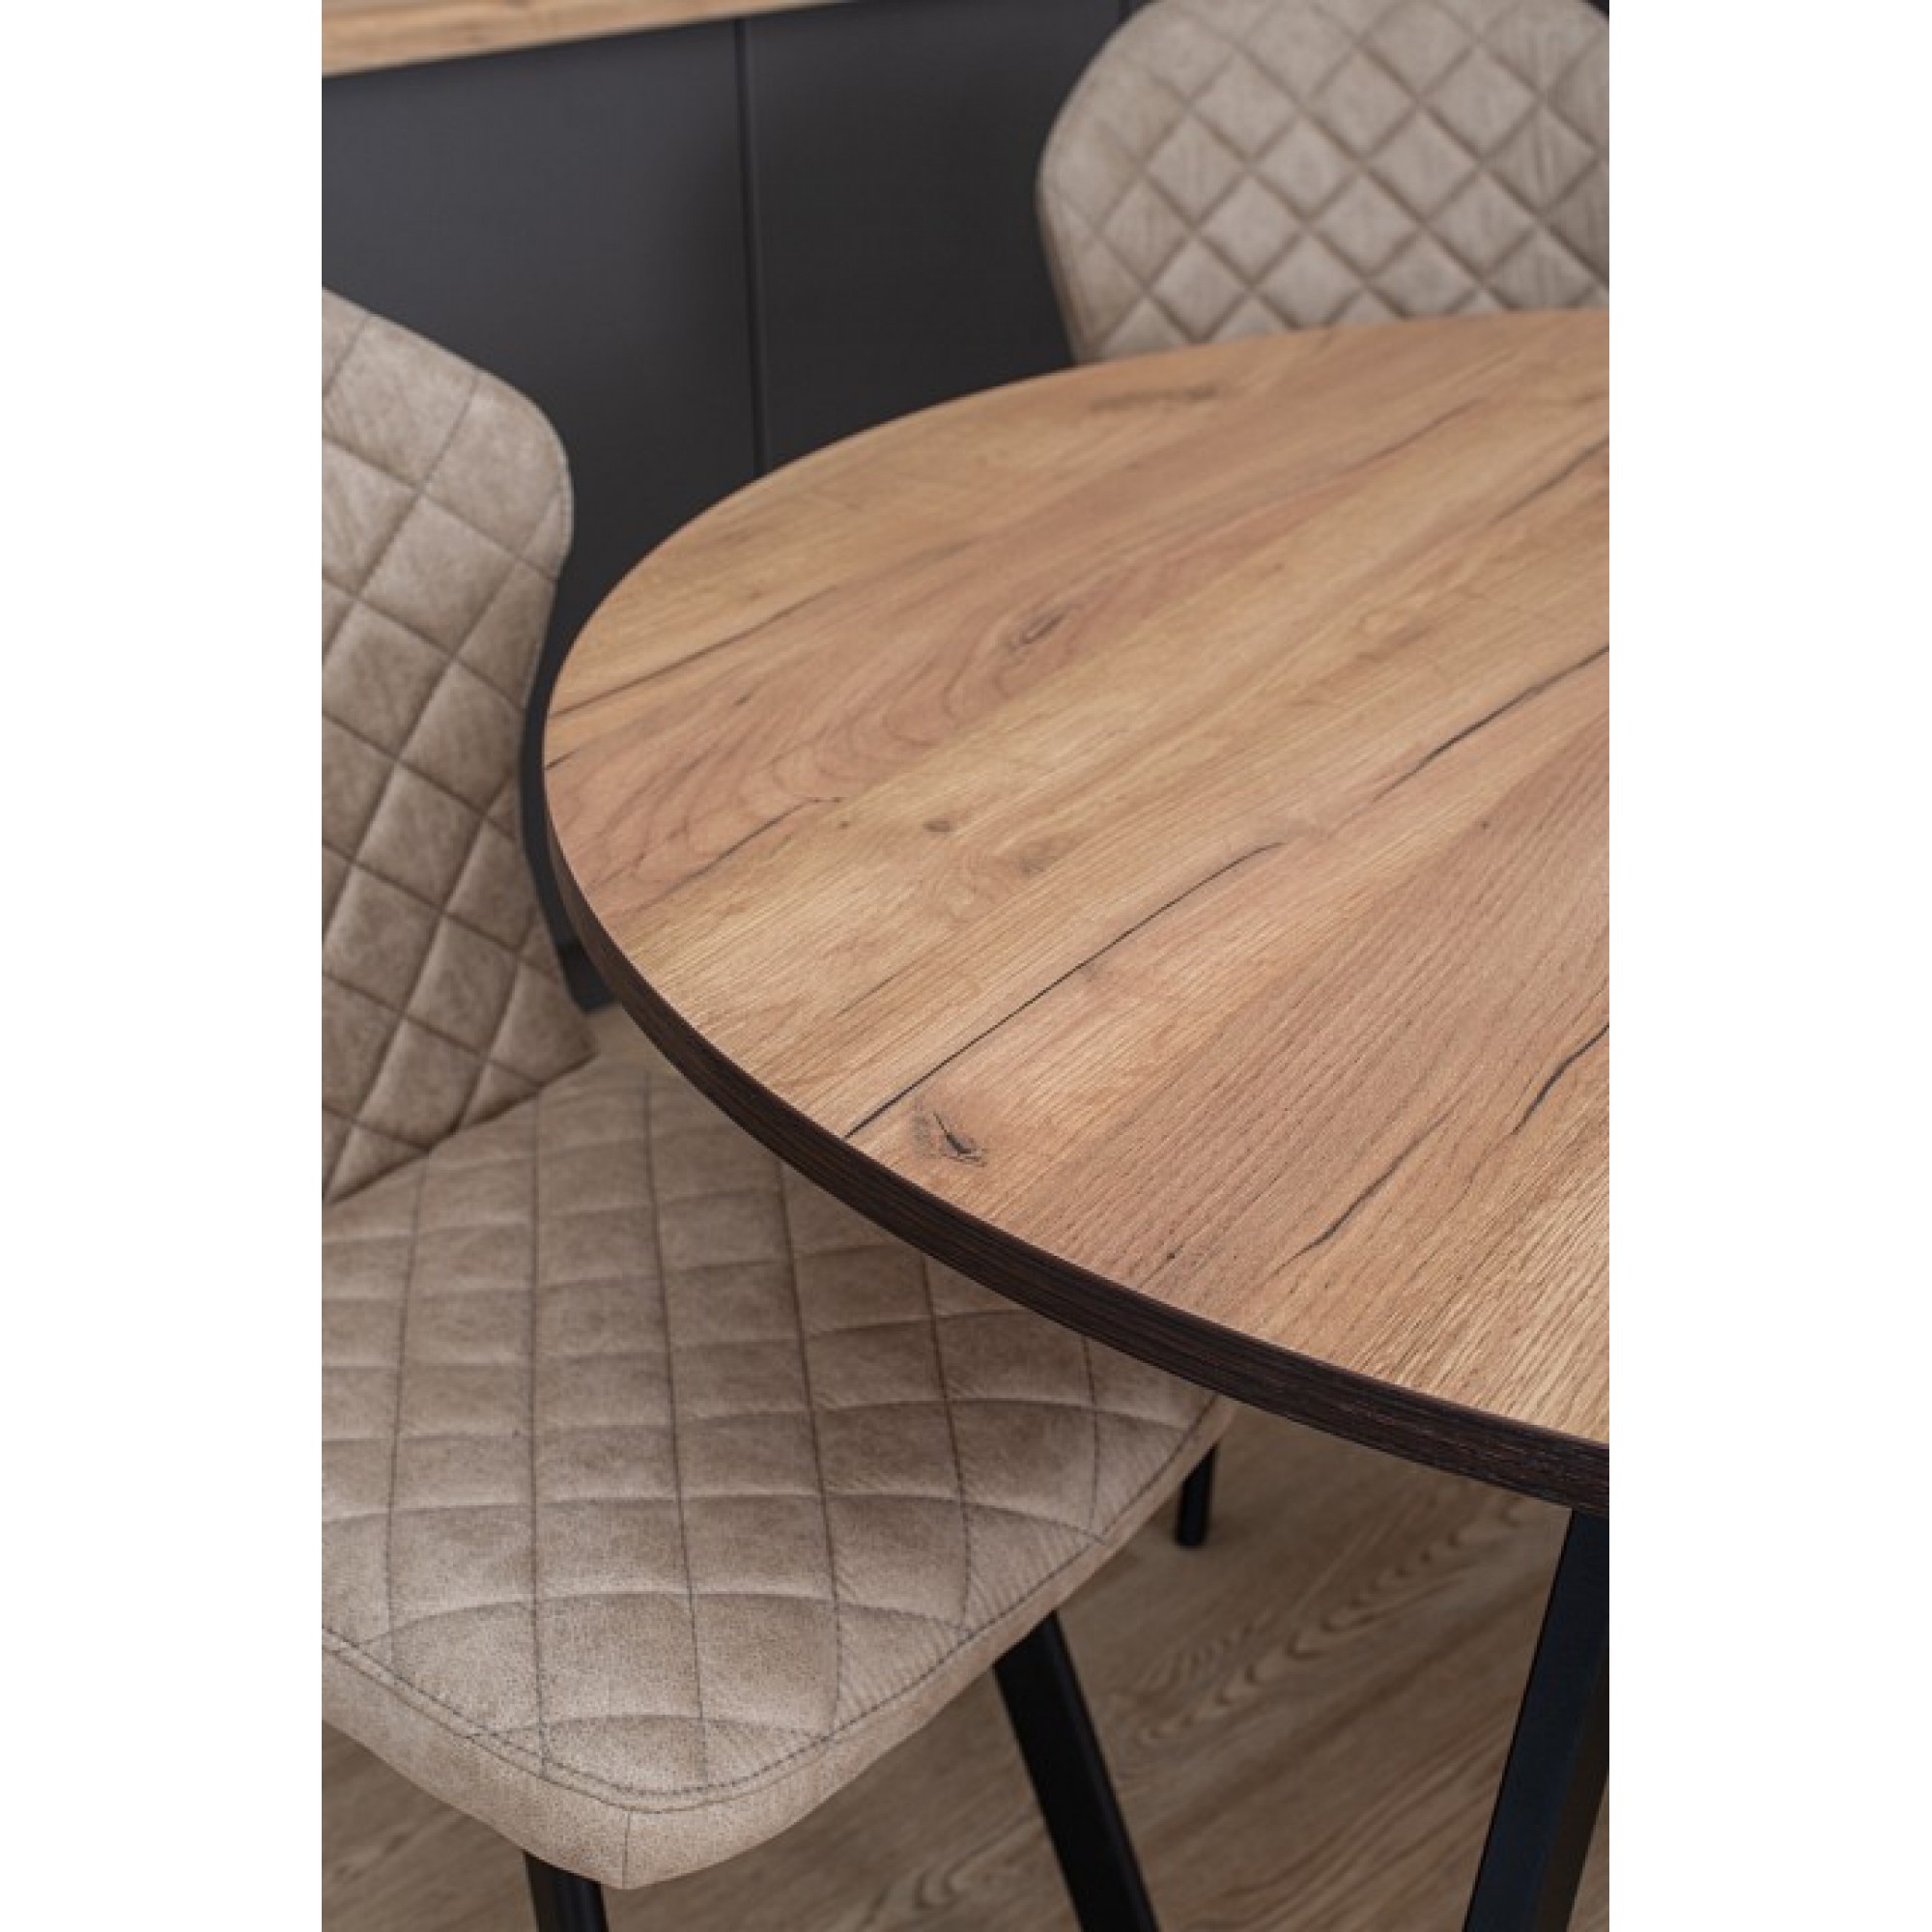 Стол обеденный Дельта К-1 древесина коричневая светлая дуб DOM_Delta_K-1_DK_94_CHR